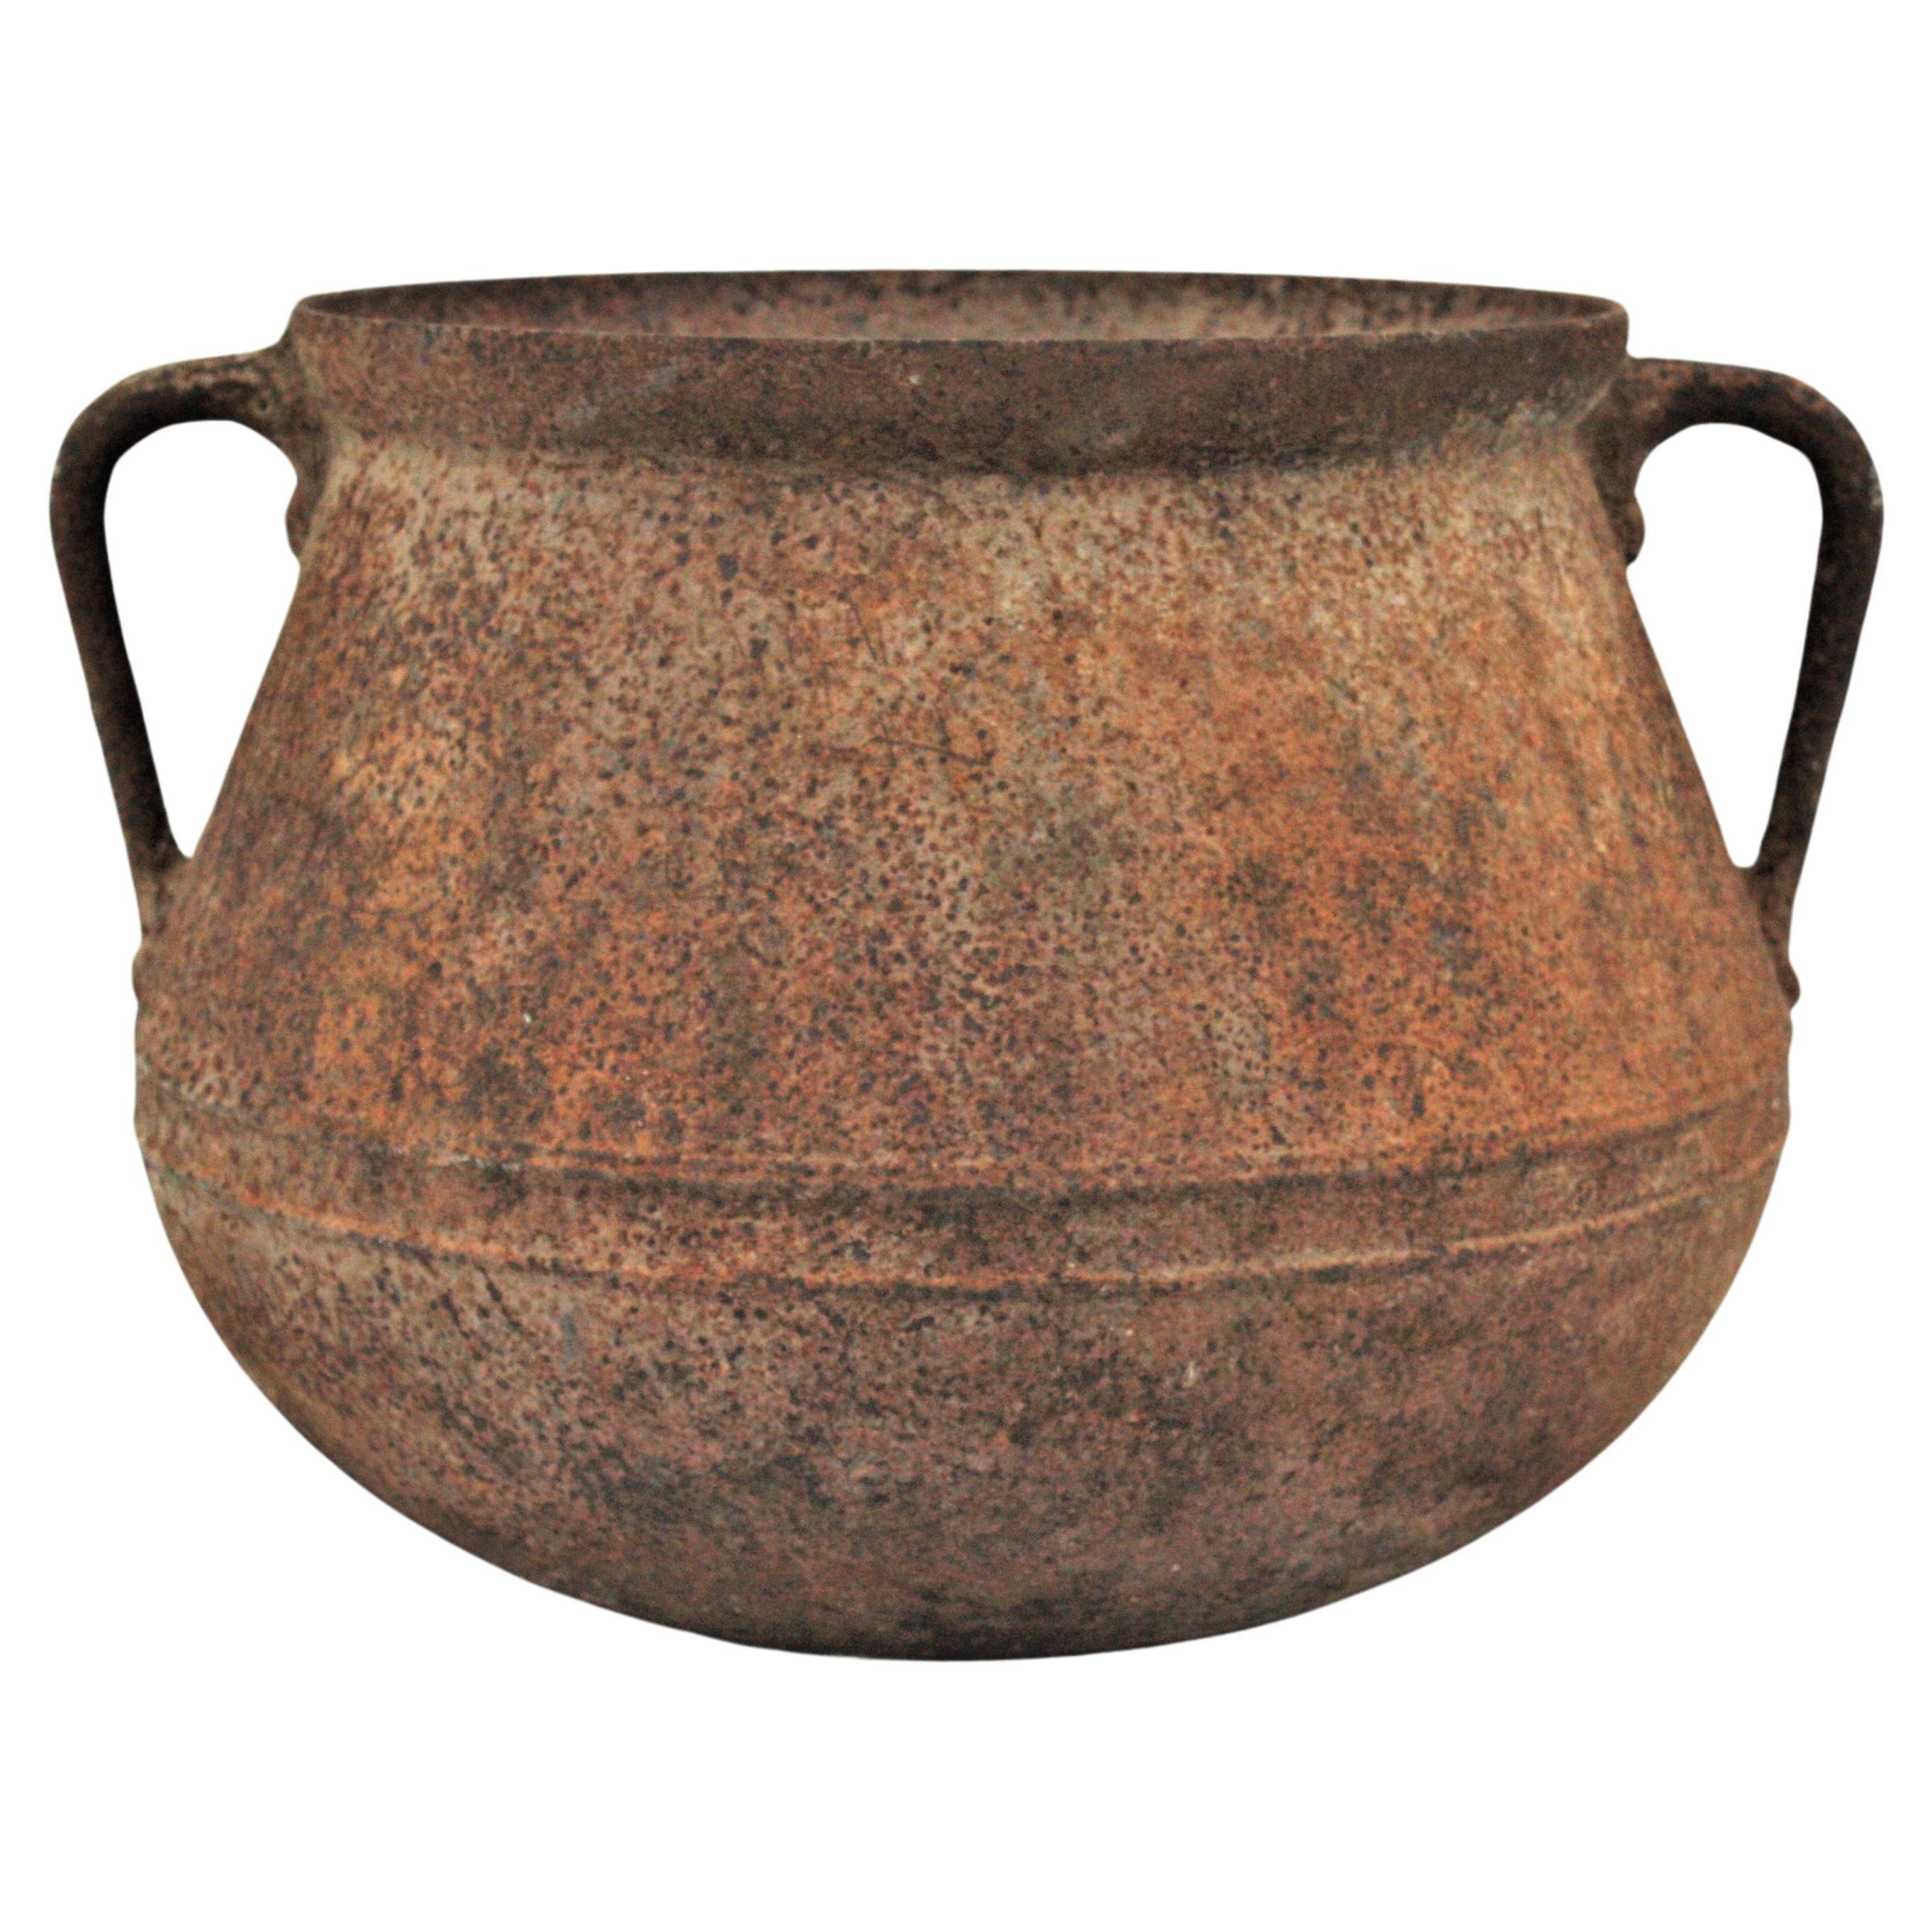 Pot à chaudron ou récipient en fer rustique espagnol avec patine rouille d'origine